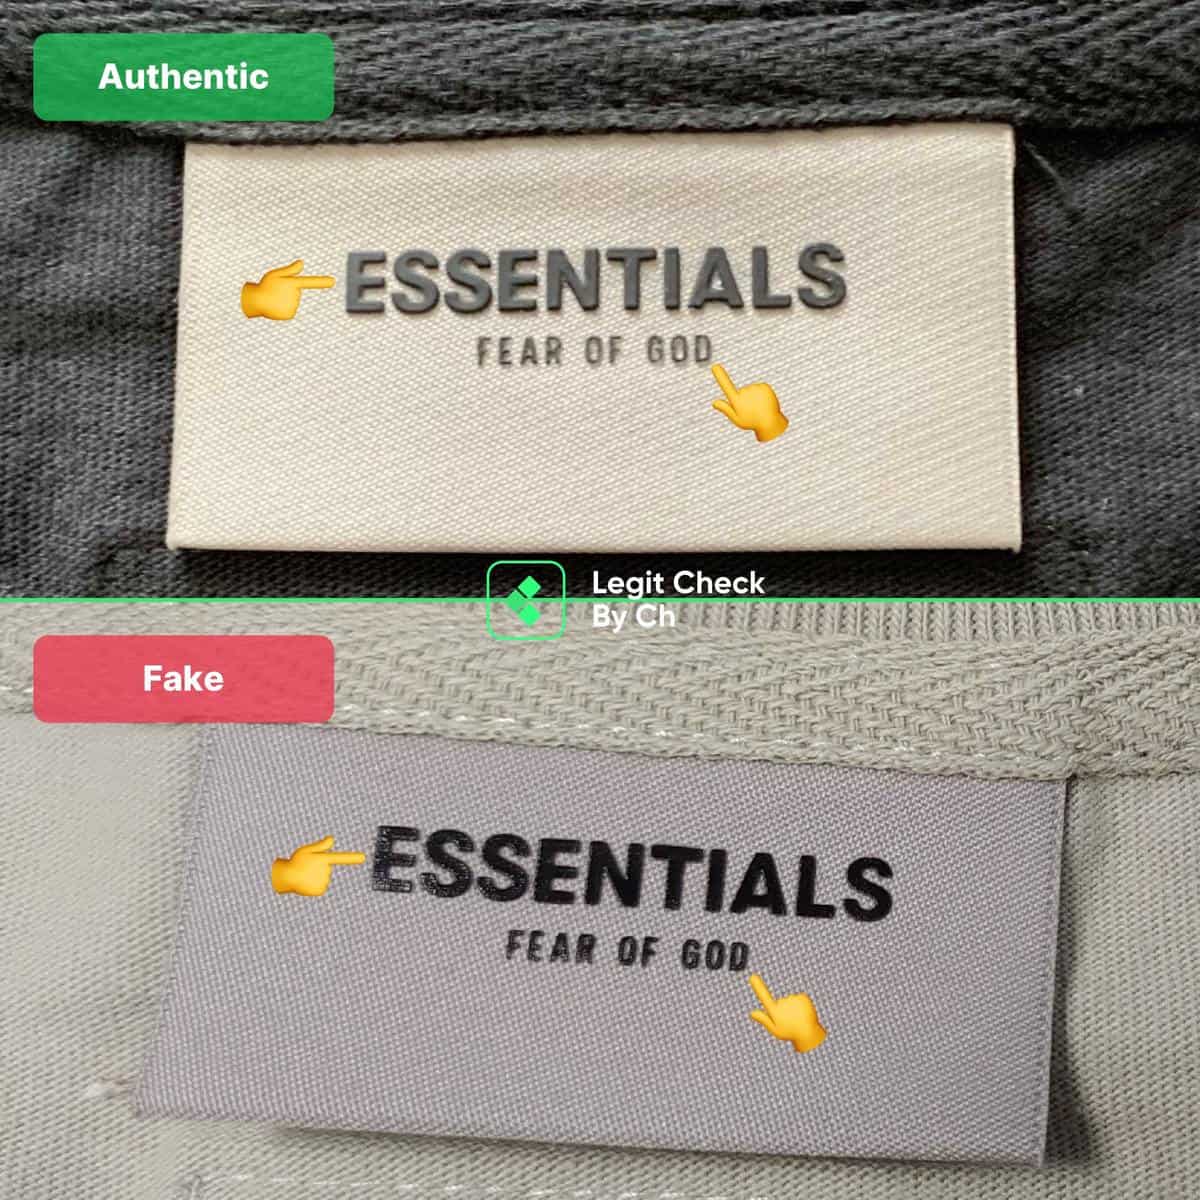 authentic vs fake